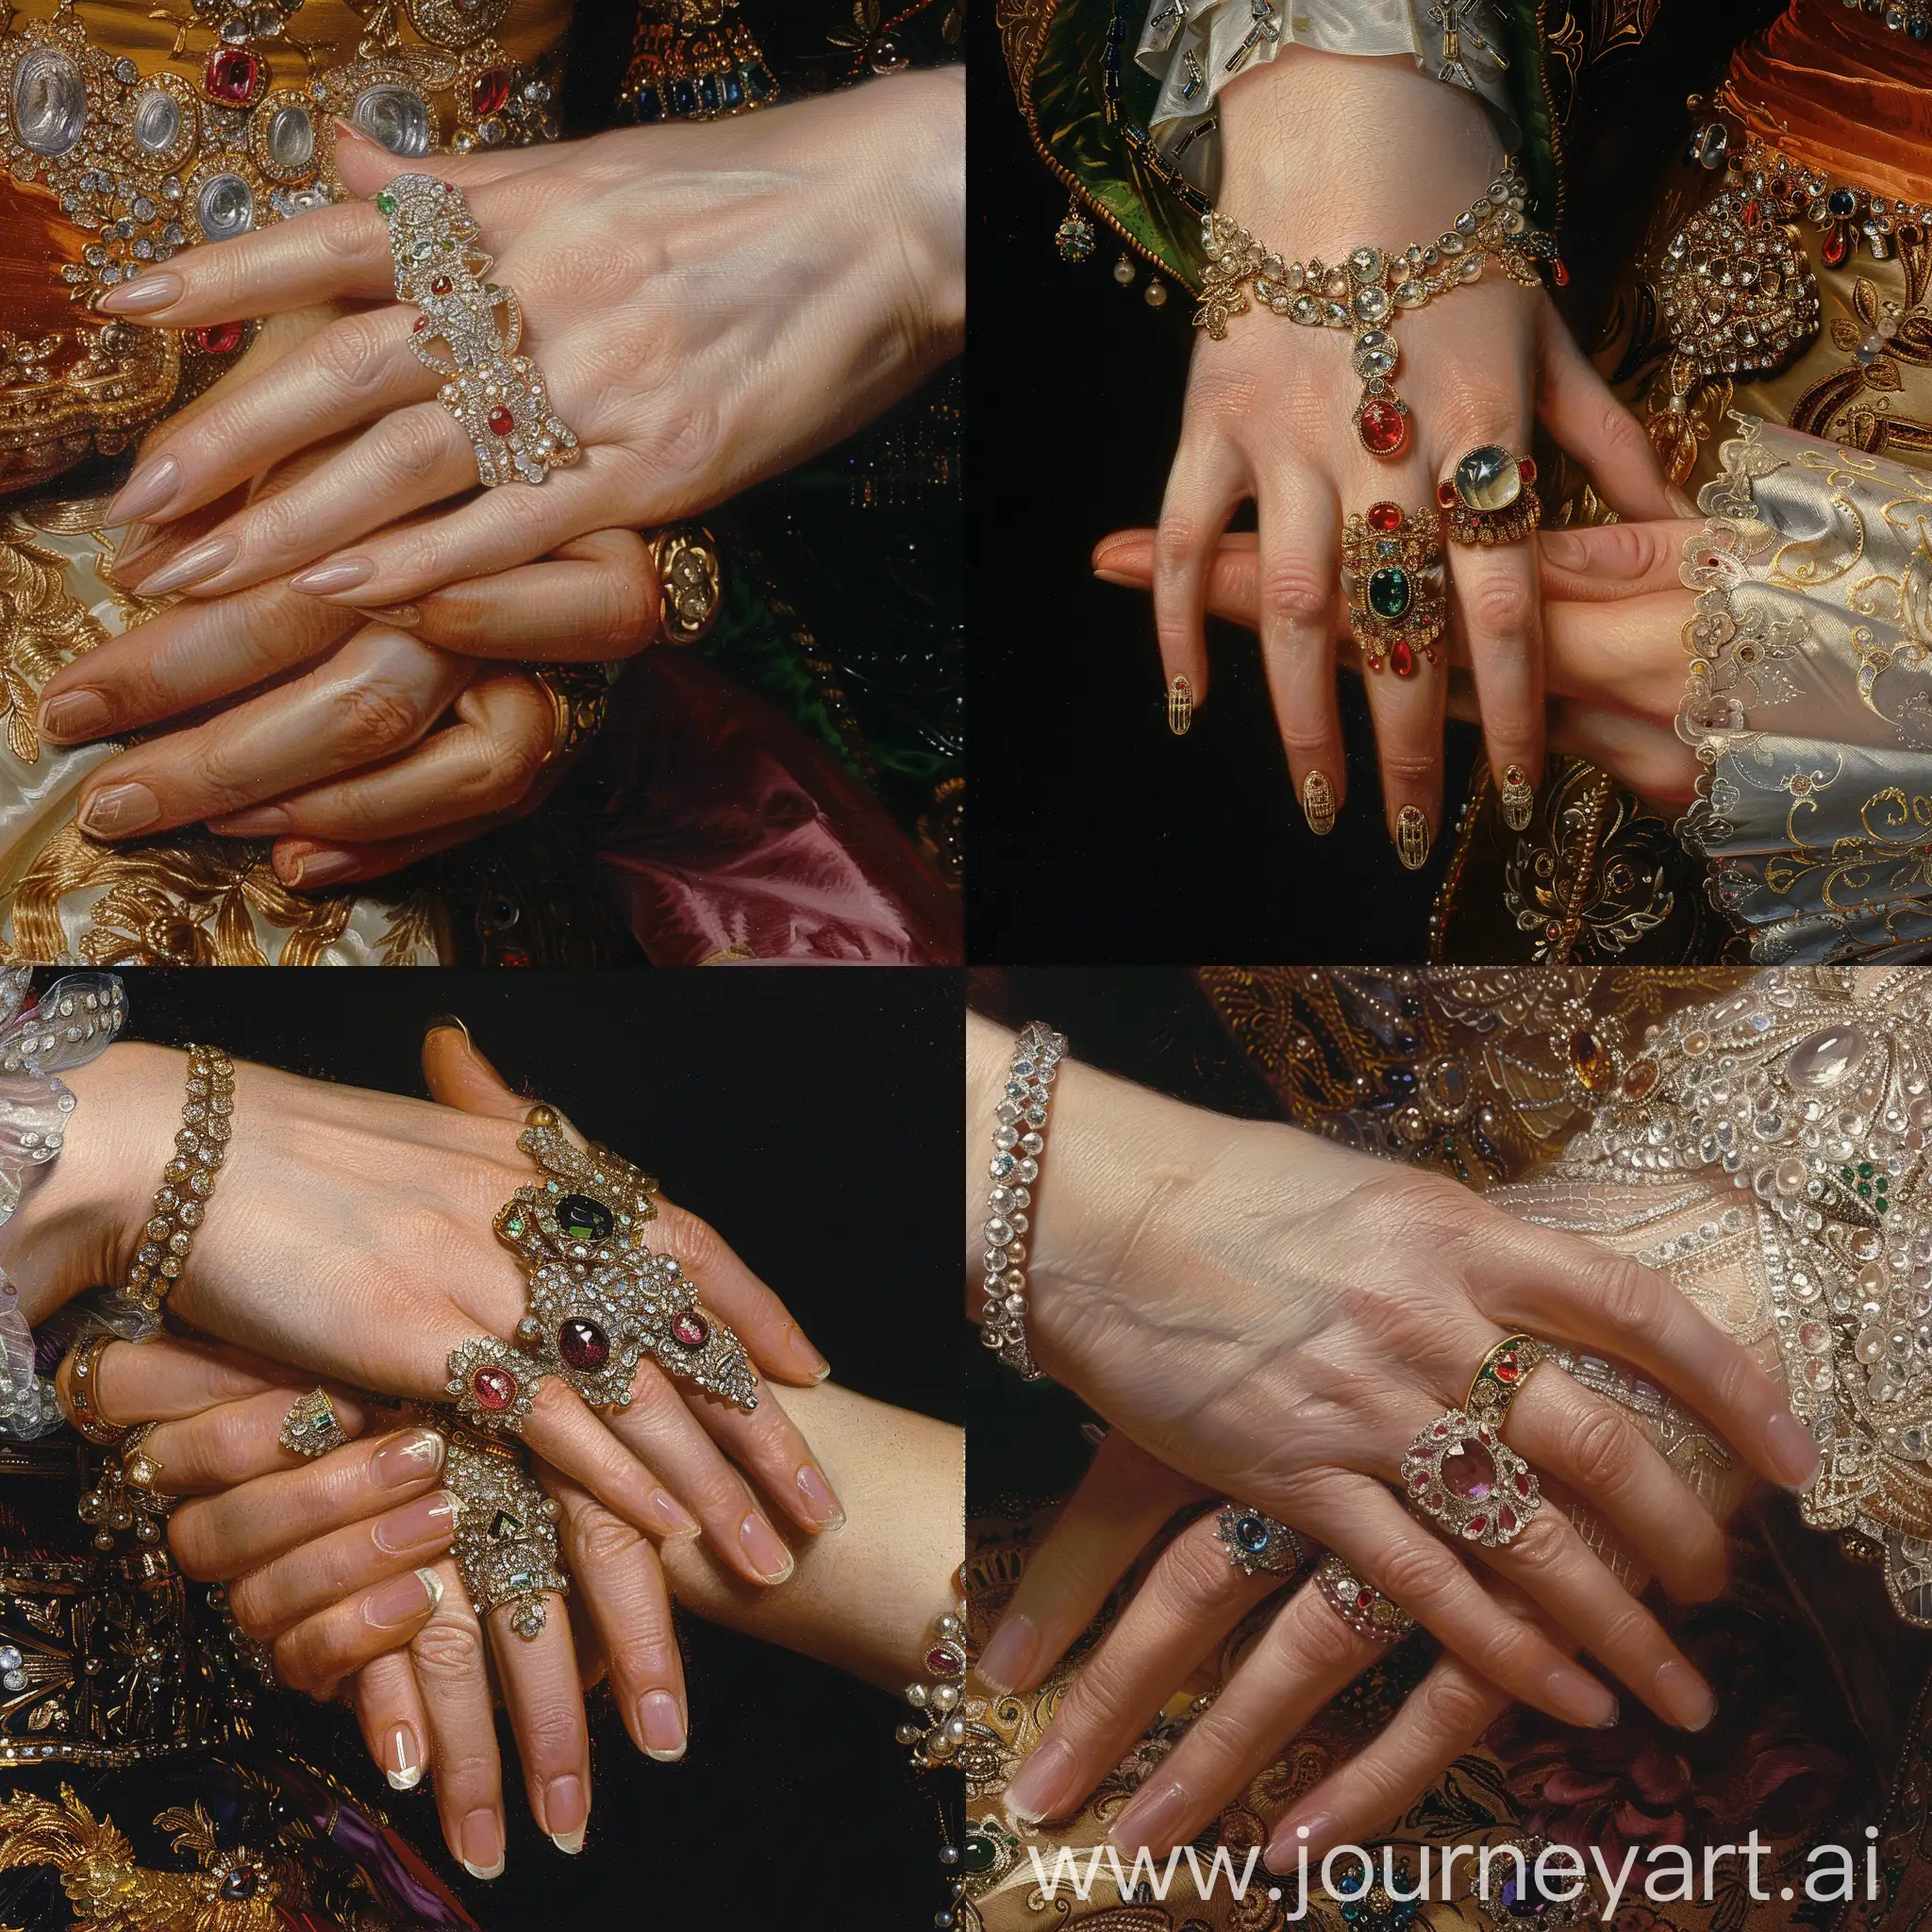 画慈禧太后的手，她的手被侍女的手捧着，慈禧太后的手细腻白皙，指甲长长的，佩戴着诸多华丽昂贵的珠宝。细节丰富 高清

